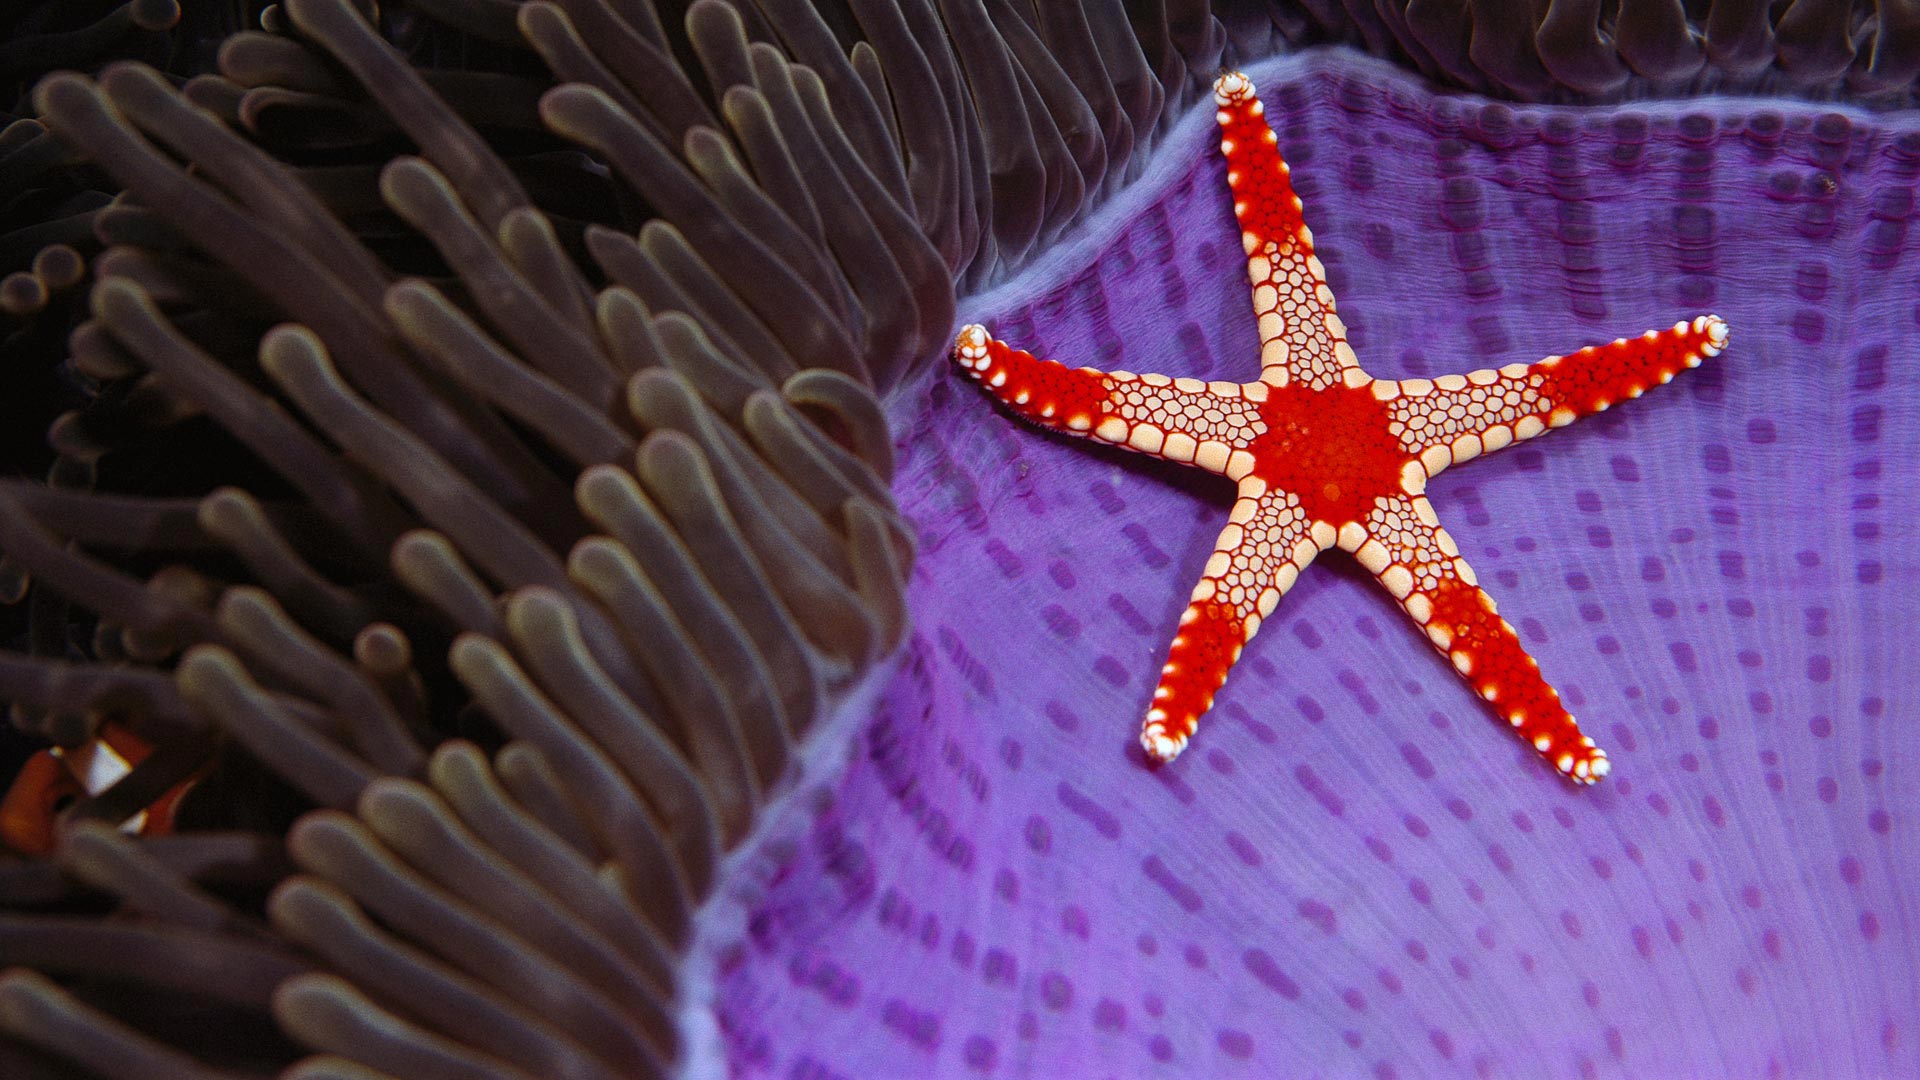 Underwater 1080p Wallpaper Starfish - HD Wallpaper 